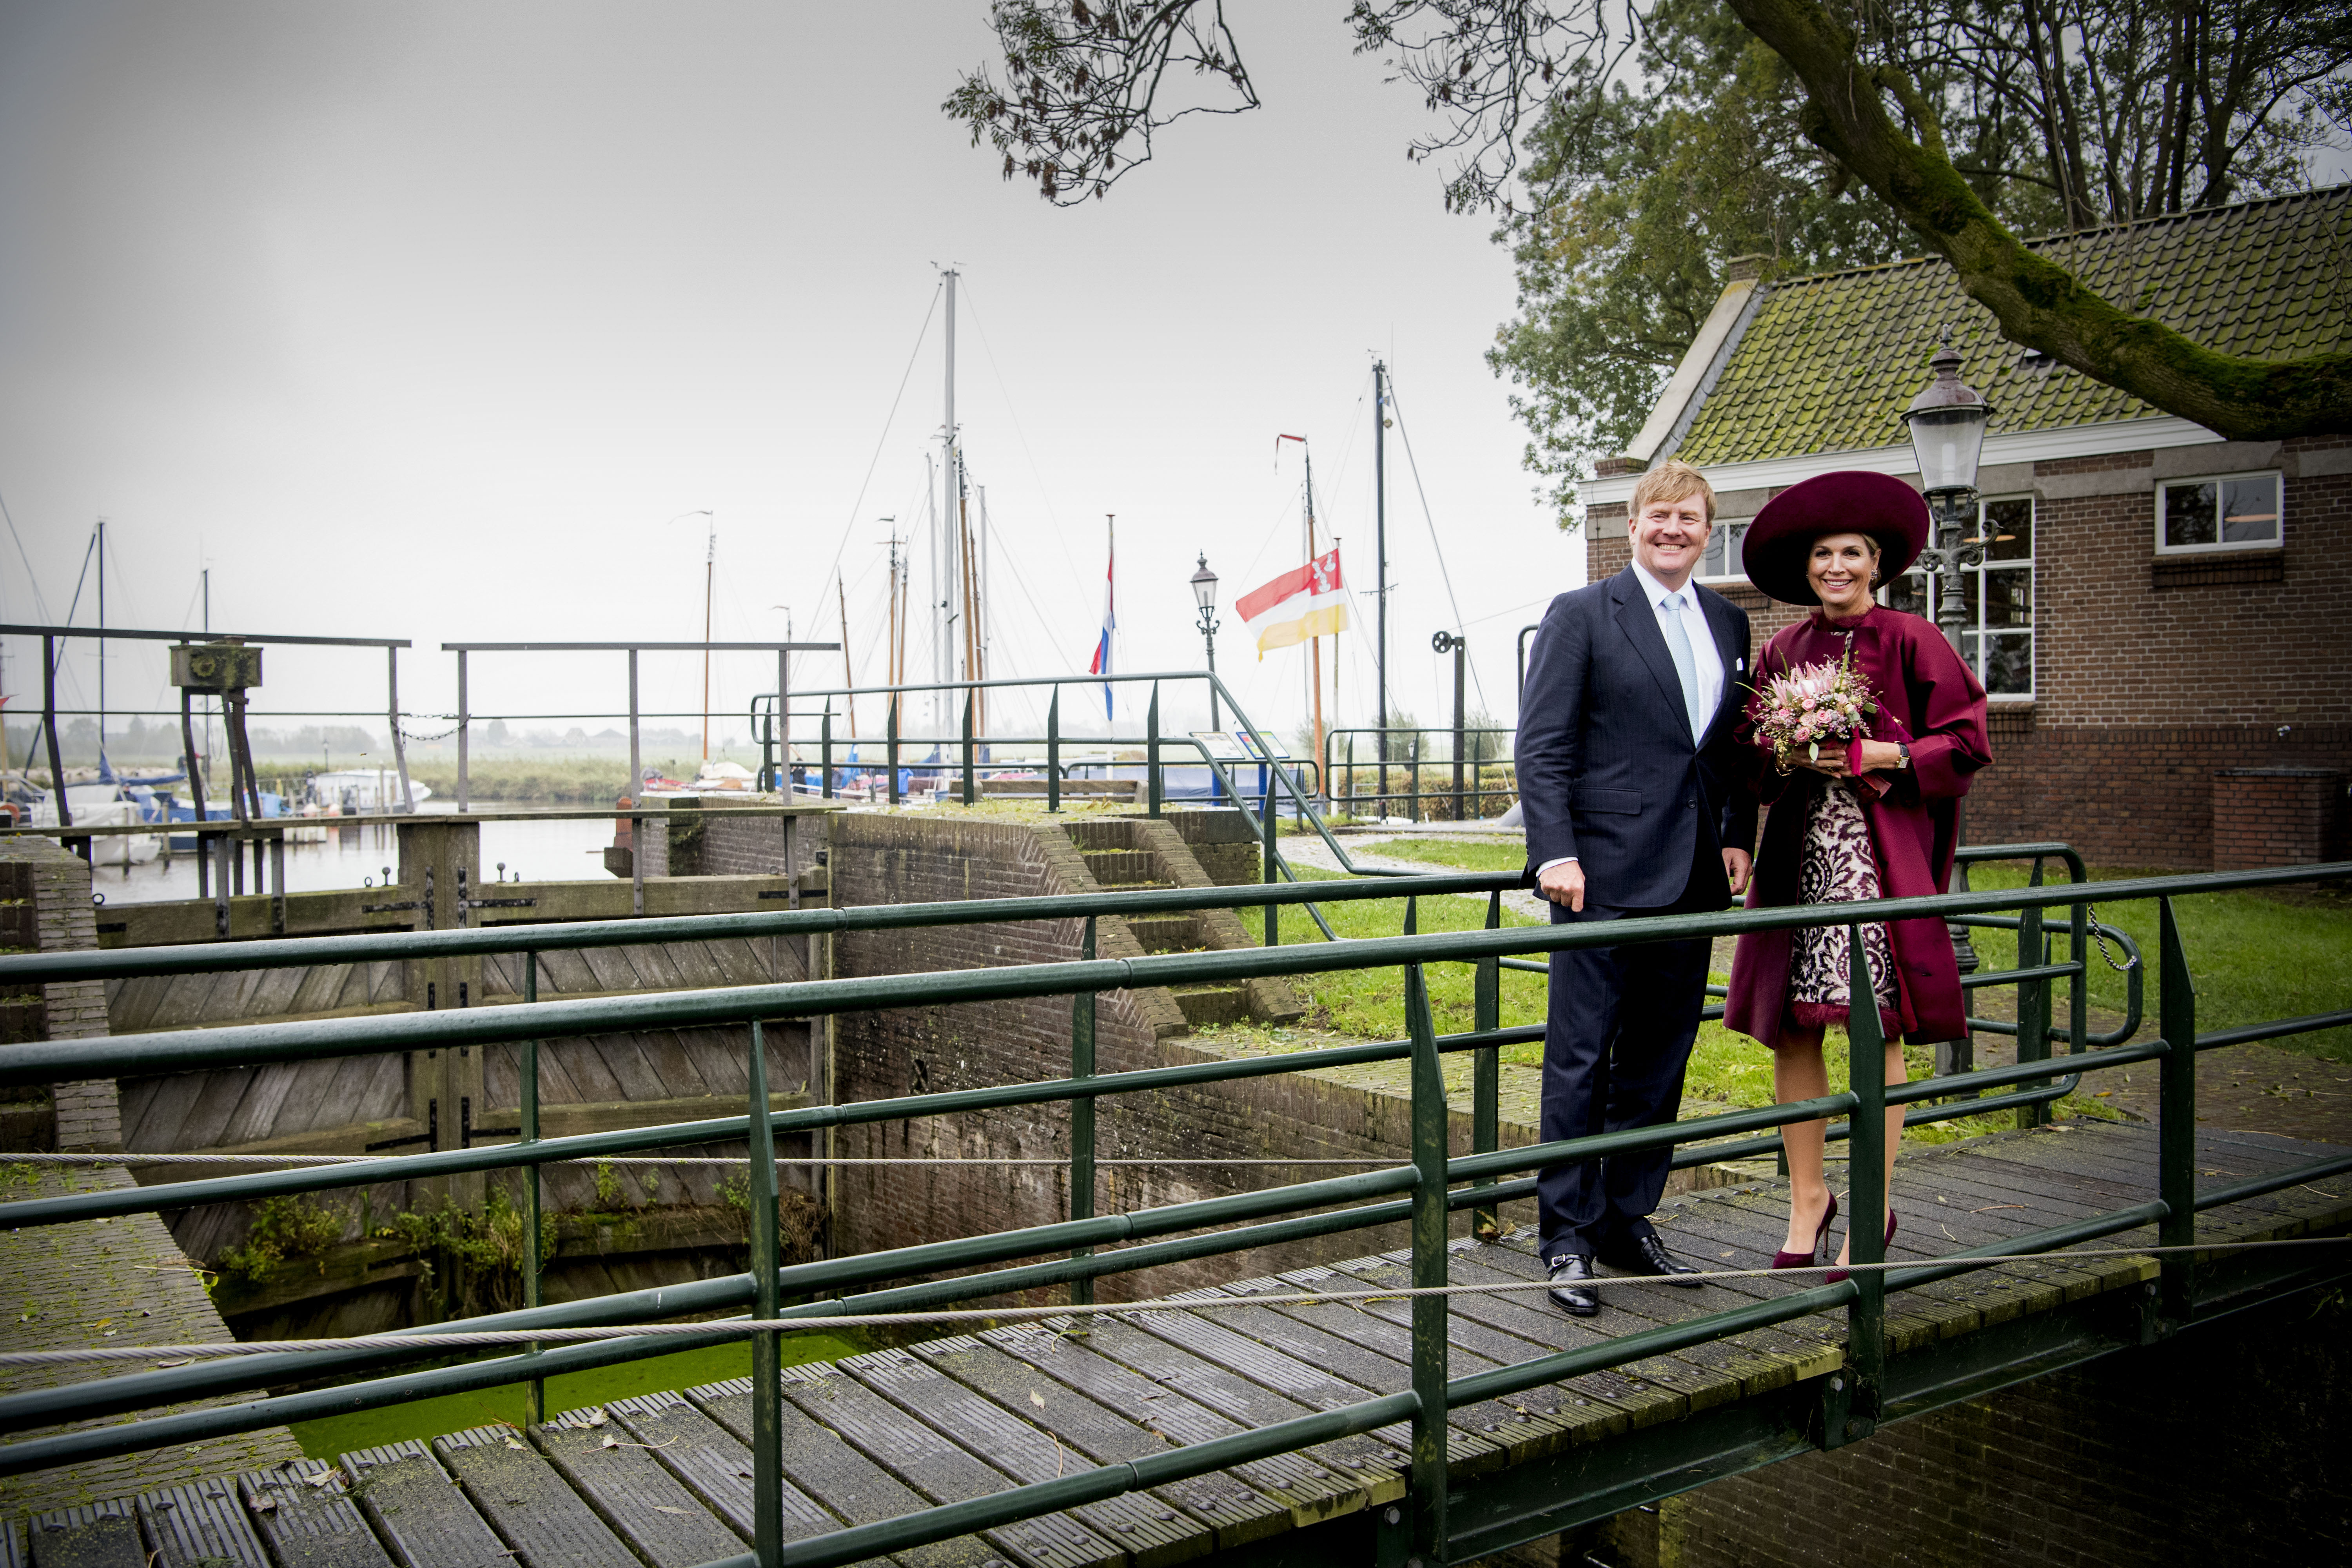 Вилем-Александър Нидерландски, пълно име Вилем-Александър Клаус Георг Фердинанд е крал на Нидерландия, най-голям син на кралица Беатрикс Нидерландска и принц Клаус ван Амсберг. На снимката е заедно със съпругата си.